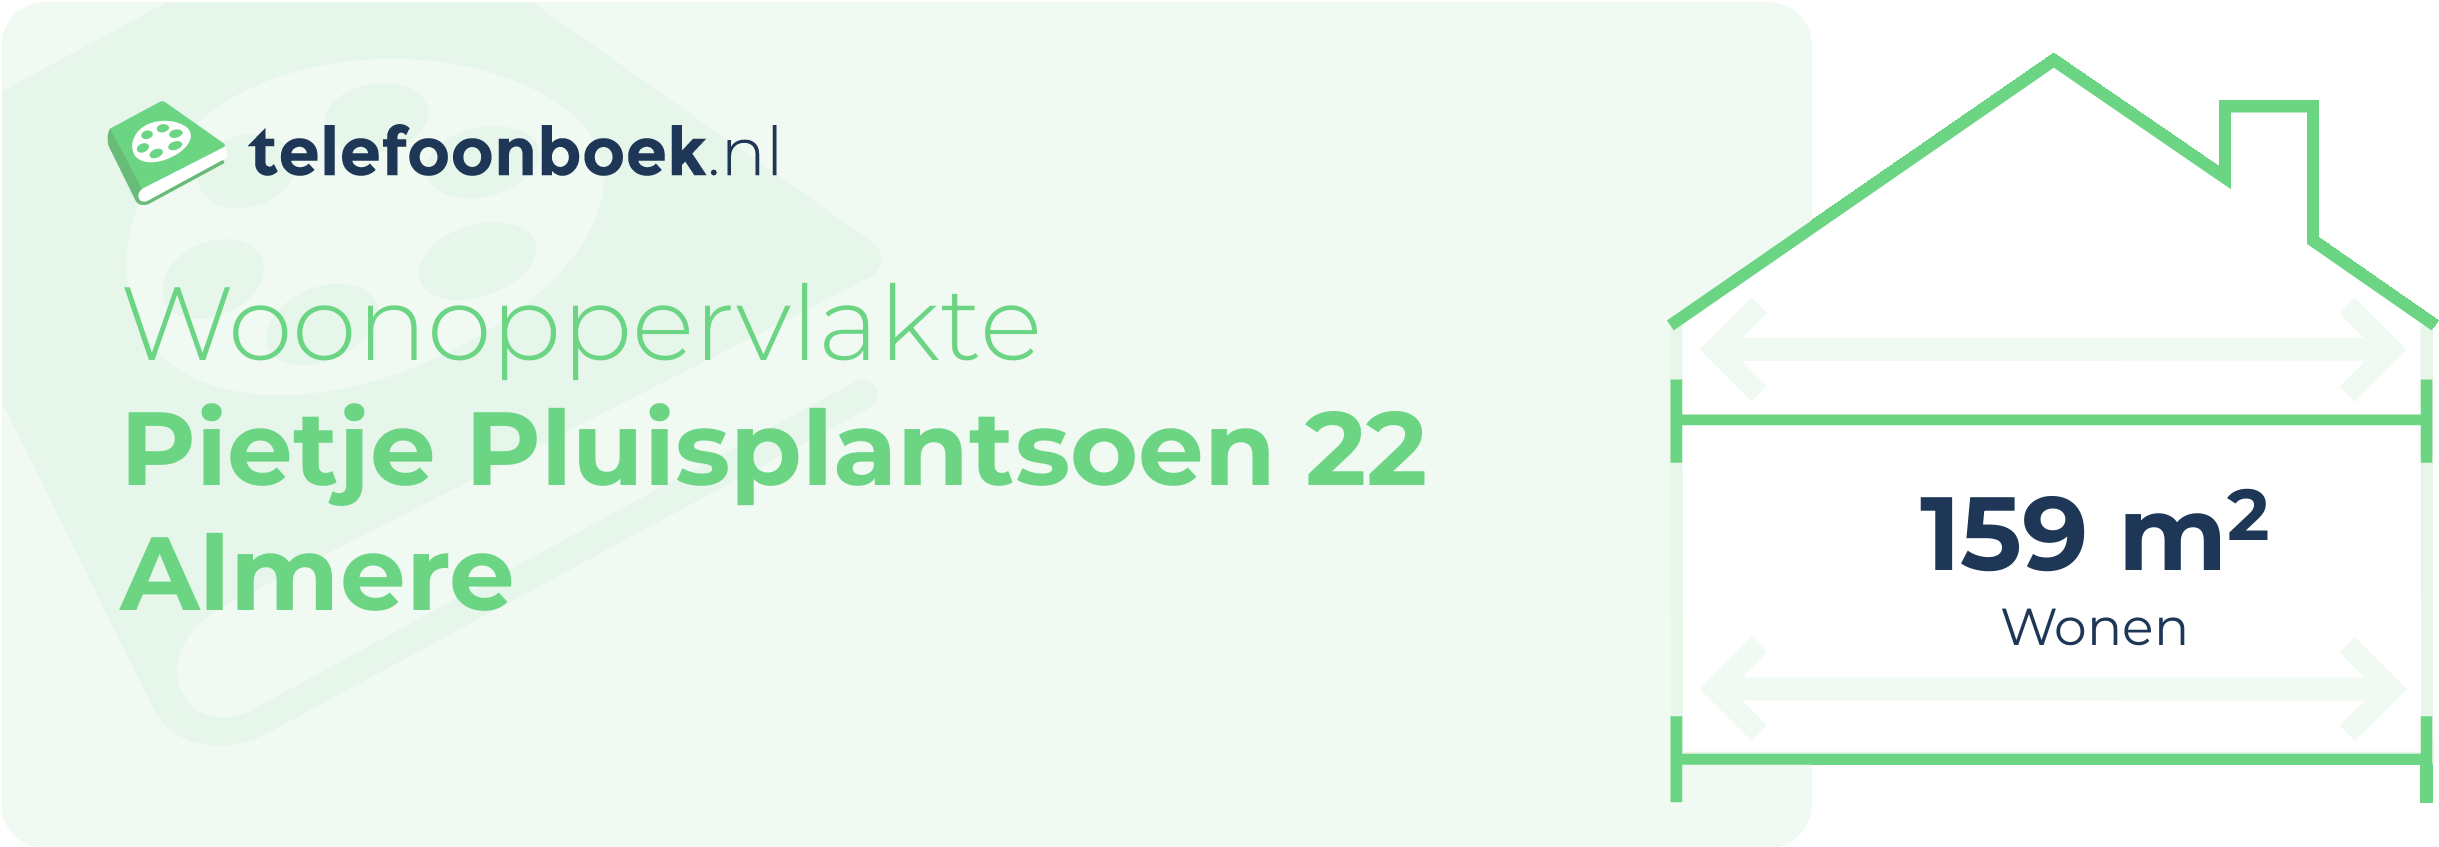 Woonoppervlakte Pietje Pluisplantsoen 22 Almere